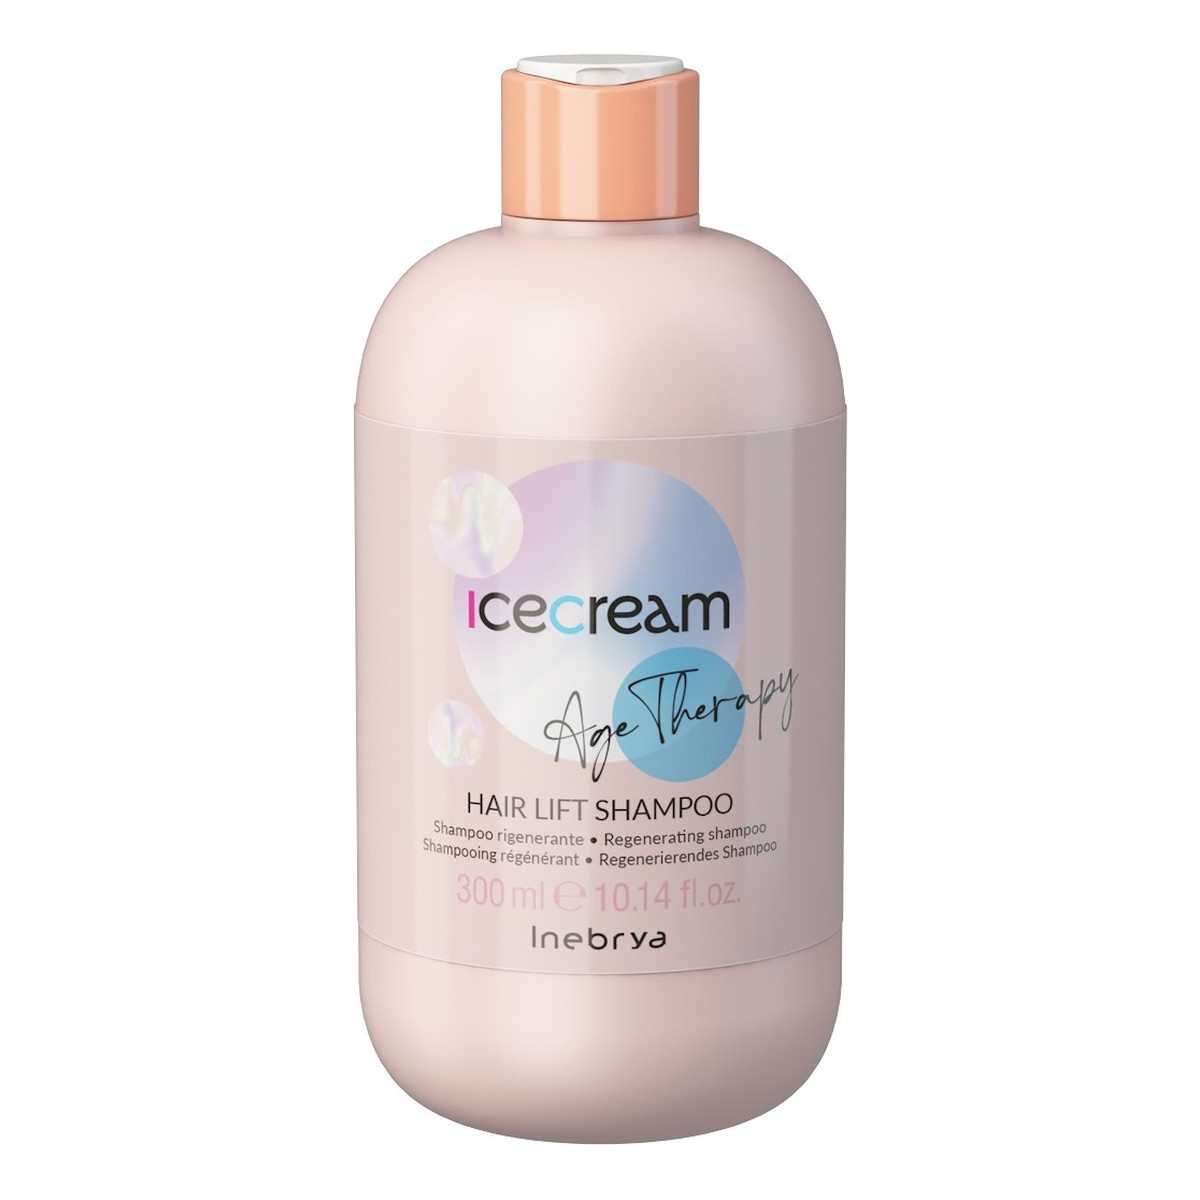 Inebrya Age therapy hair lift shampoo regenerujący szampon do włosów 300ml